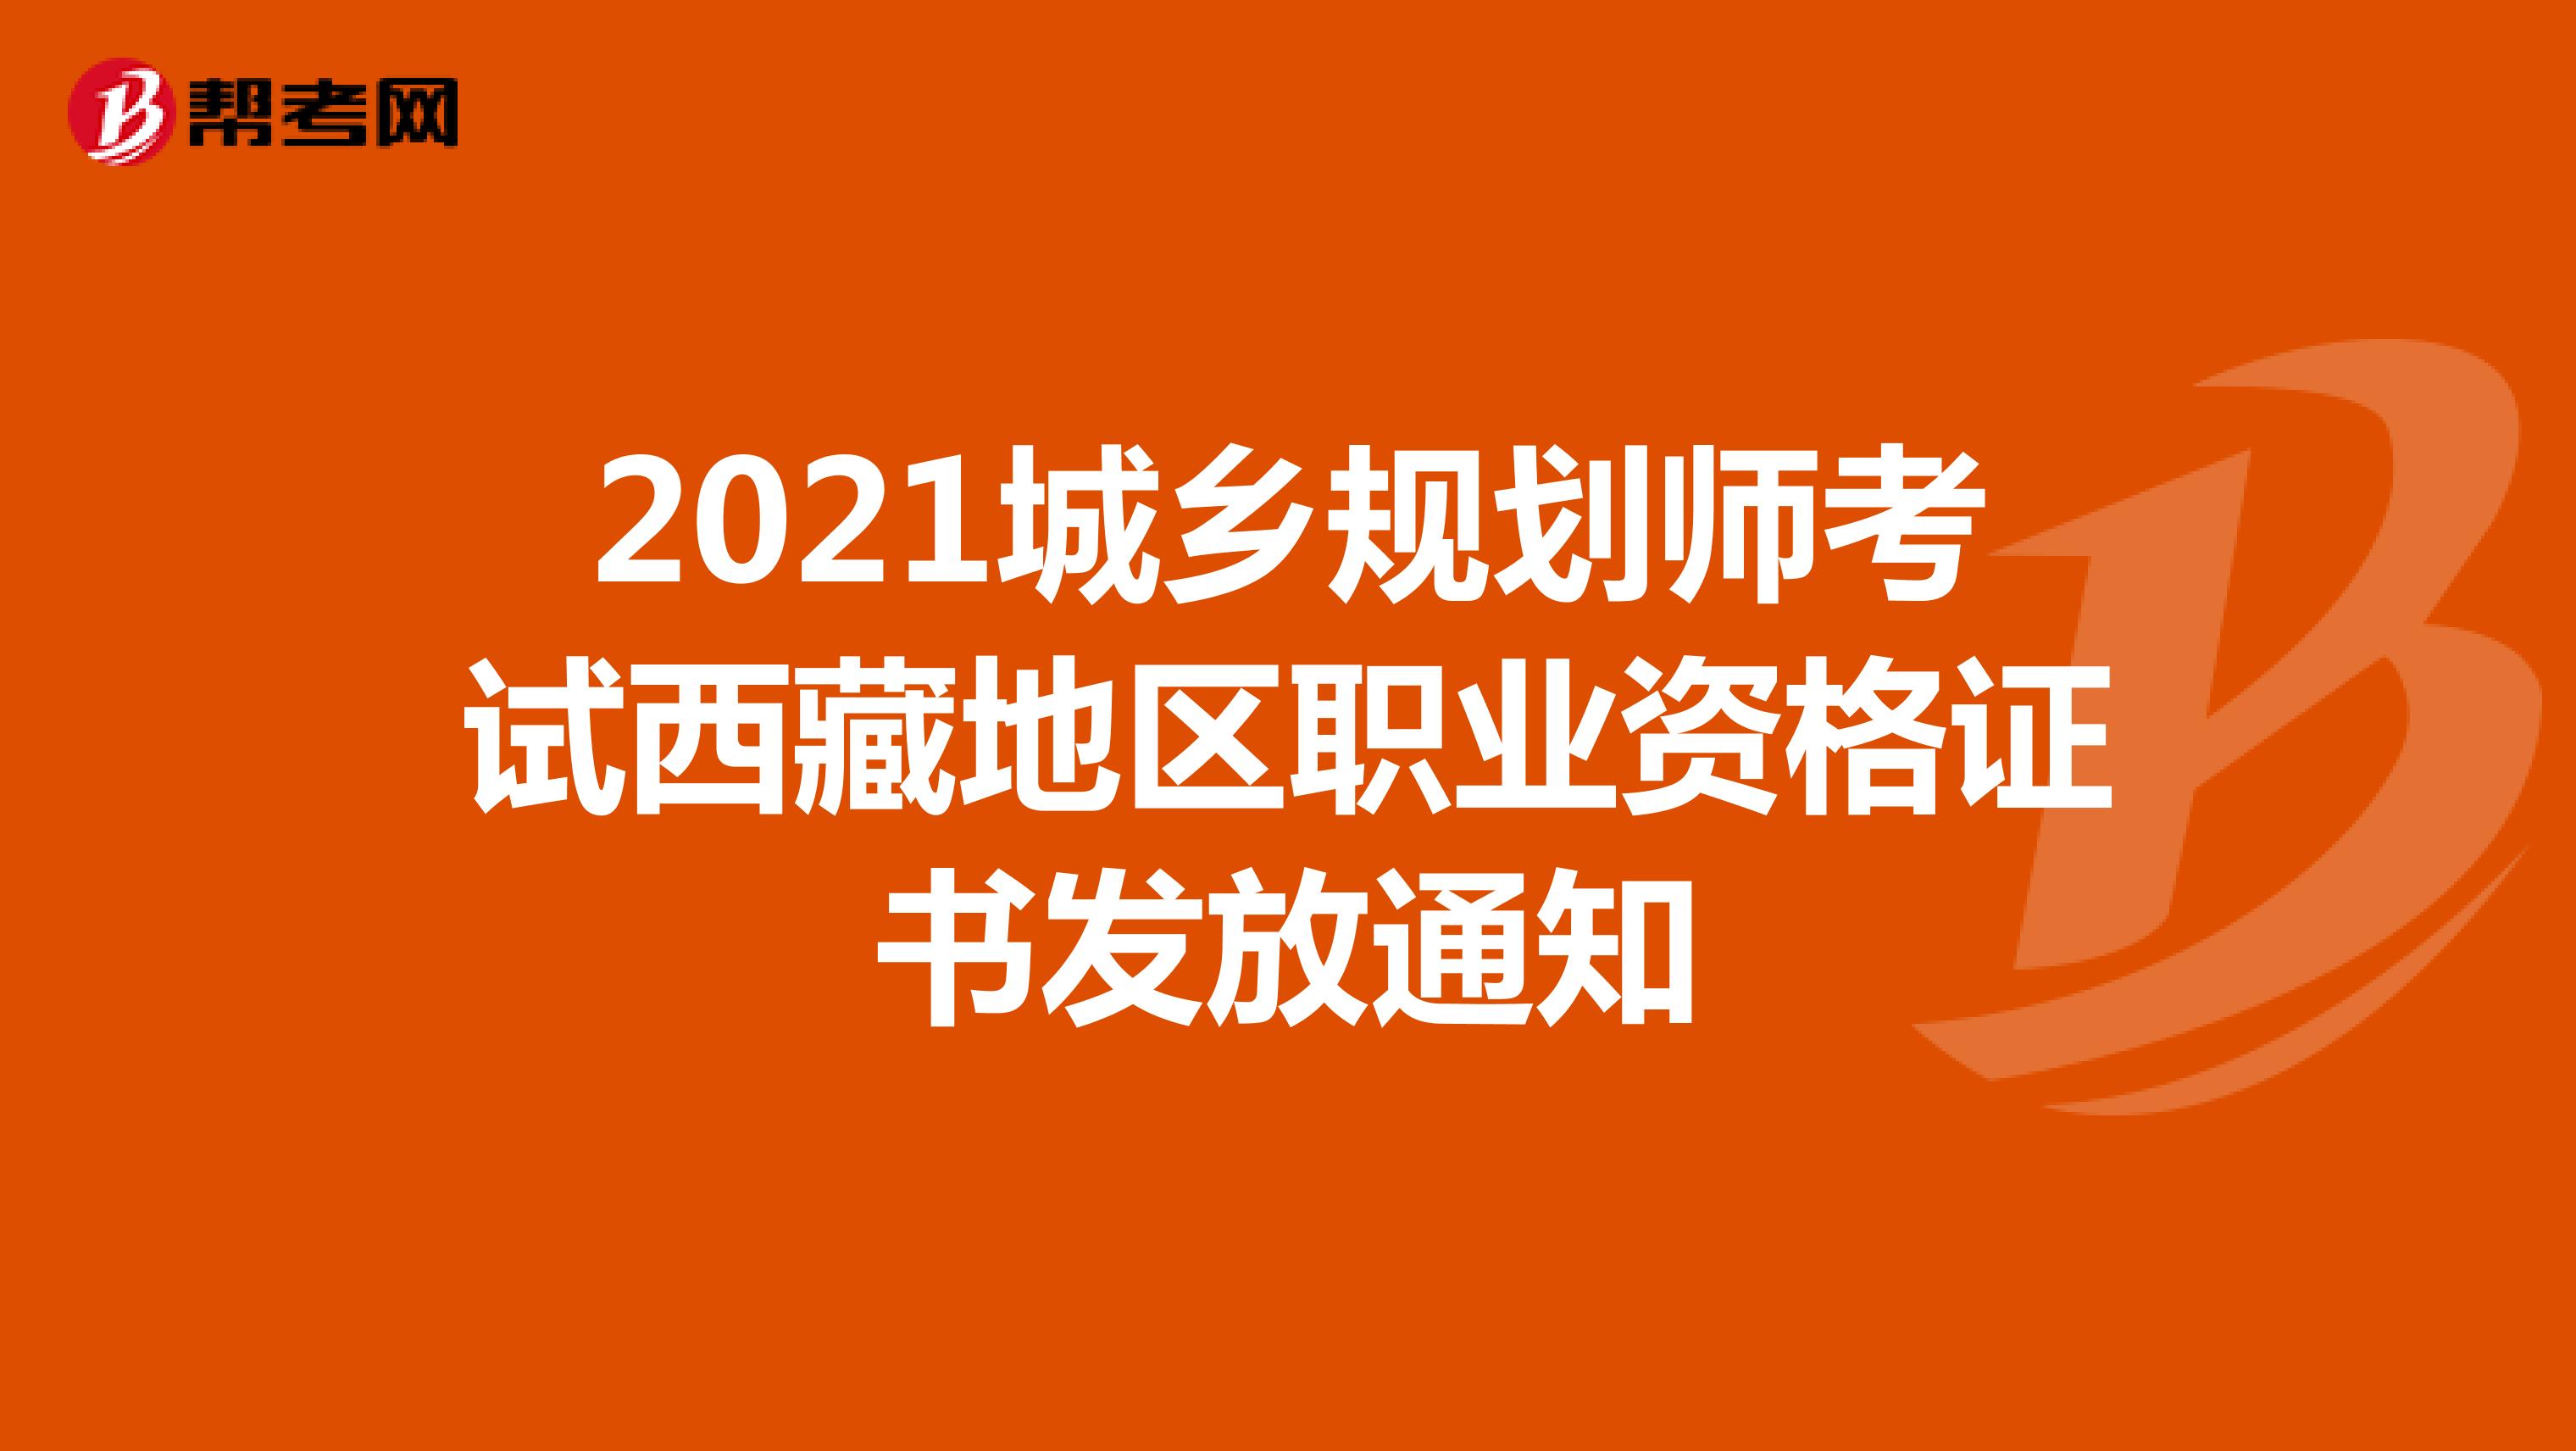 2021城乡规划师考试西藏地区职业资格证书发放通知